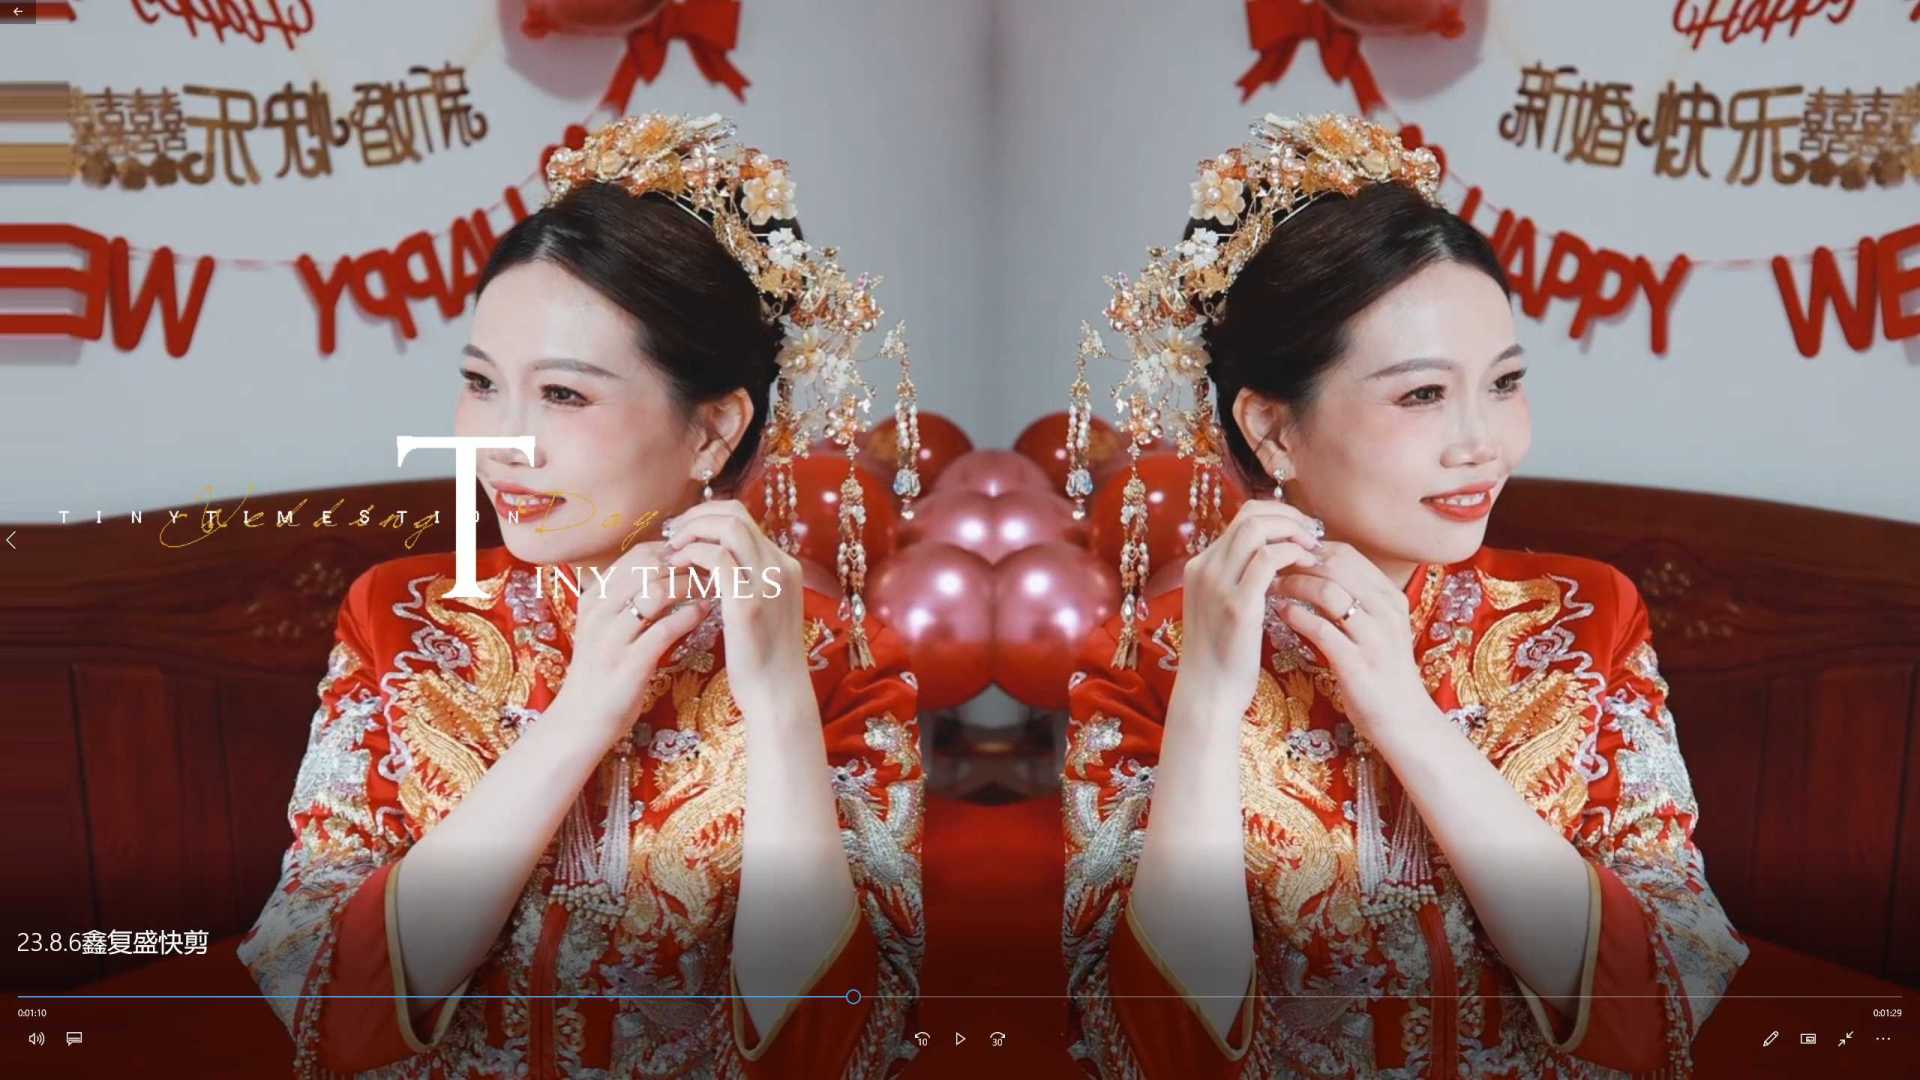 23.8.6刁鹏&邵群 鑫复盛礼记酒店婚礼快剪